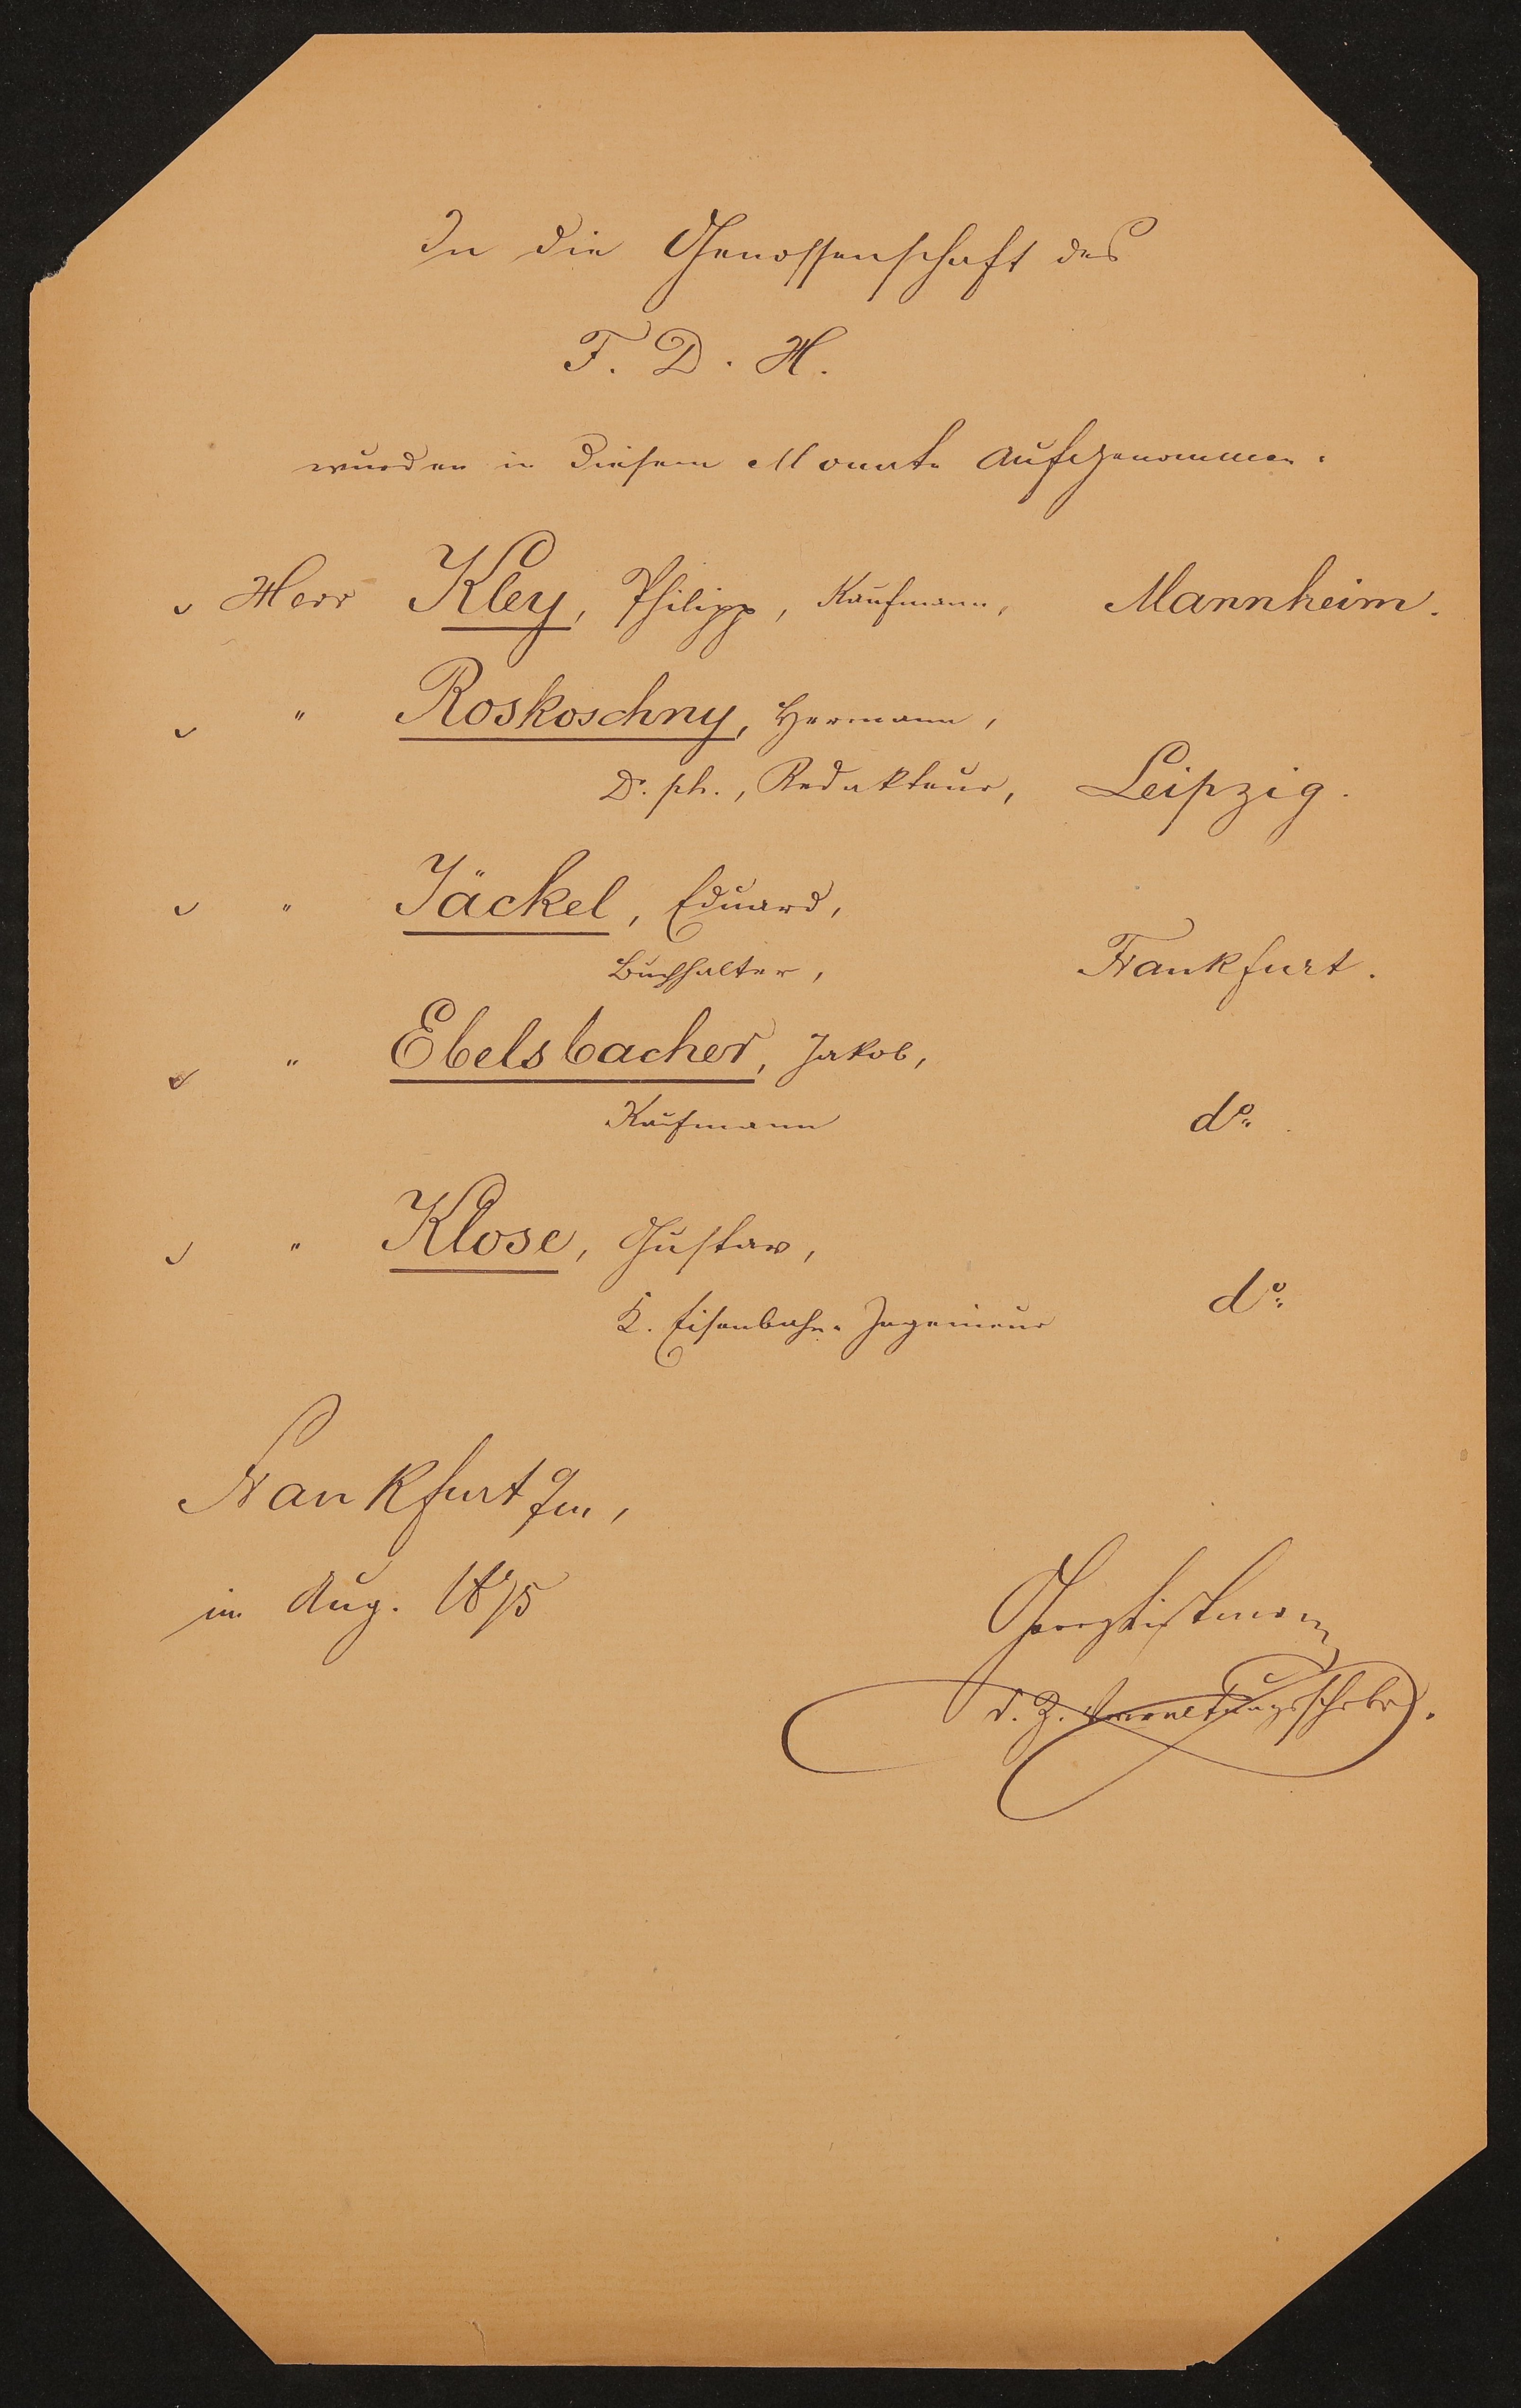 Liste "In die Genossenschaft des F.D.H. wurden in diesem Monat aufgenommen" (August 1875) (Freies Deutsches Hochstift / Frankfurter Goethe-Museum Public Domain Mark)